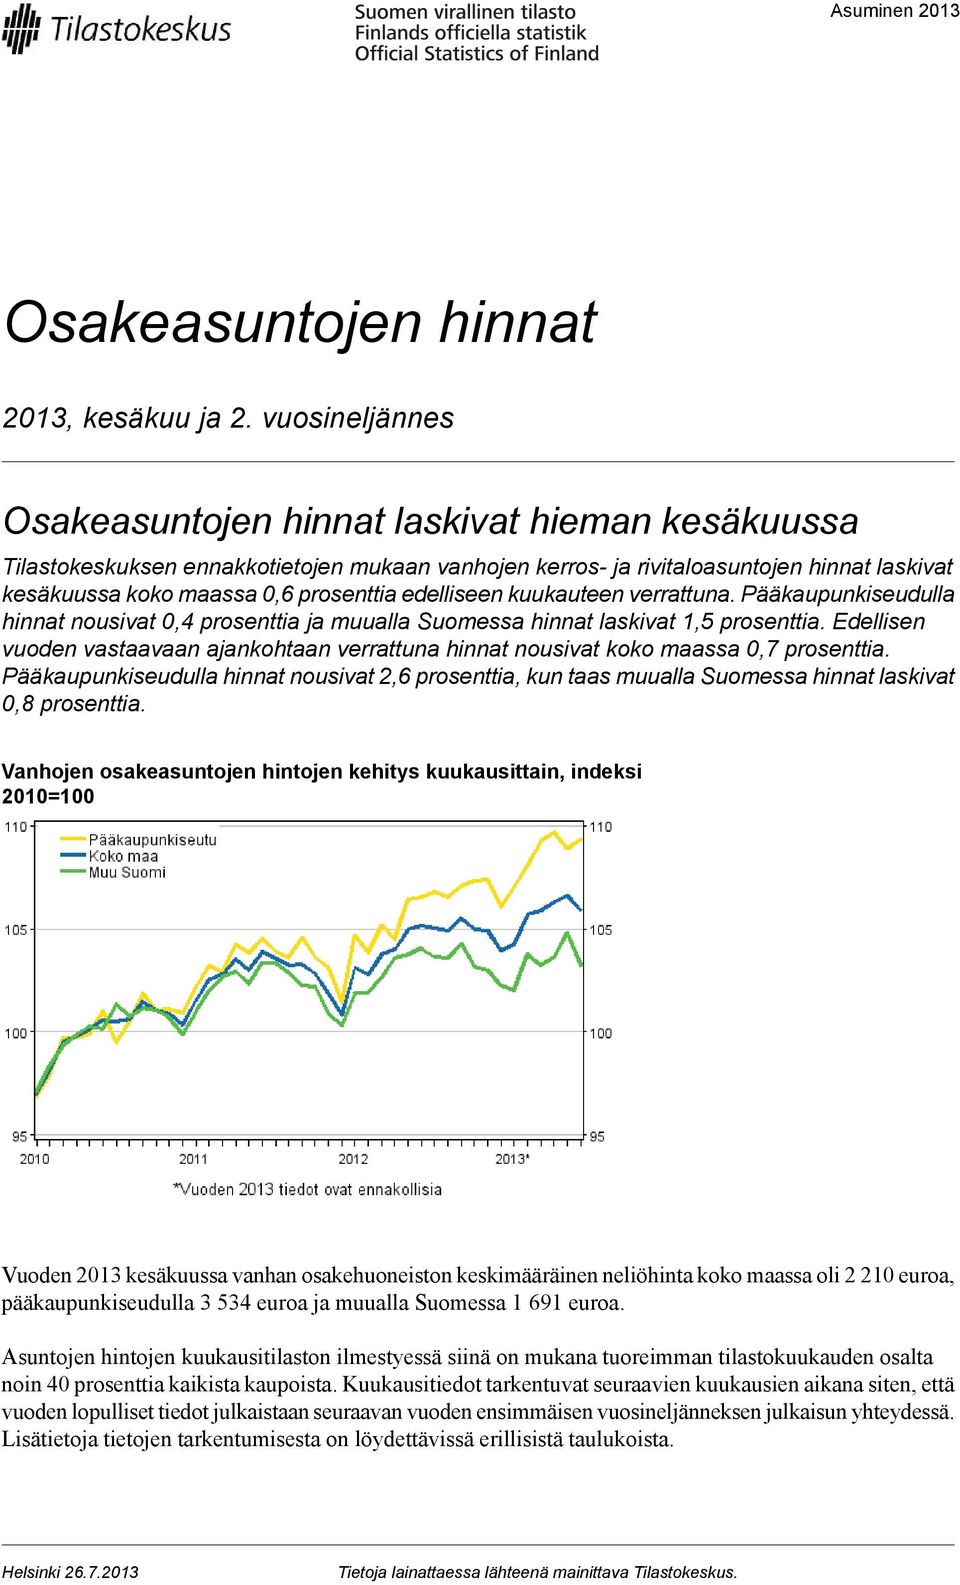 vastaavaan ajankohtaan verrattuna hinnat nousivat koko maassa prosenttia Pääkaupunkiseudulla hinnat nousivat 2,6 prosenttia, kun taas muualla Suomessa hinnat laskivat 0,8 prosenttia Vanhojen